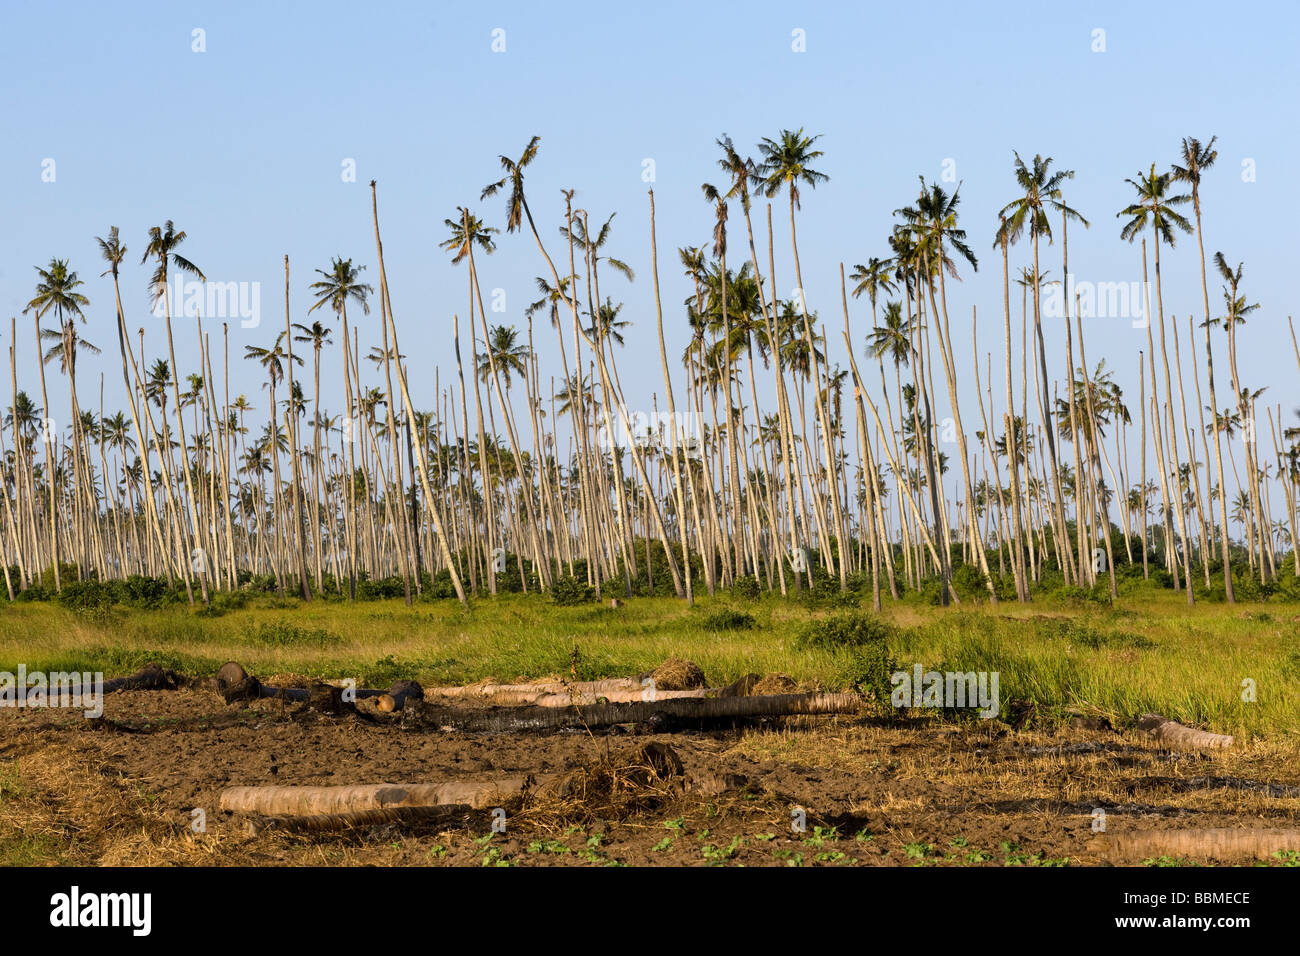 Cocotiers Cococ nucifera de mourir d'une maladie Quelimane Mozambique Banque D'Images